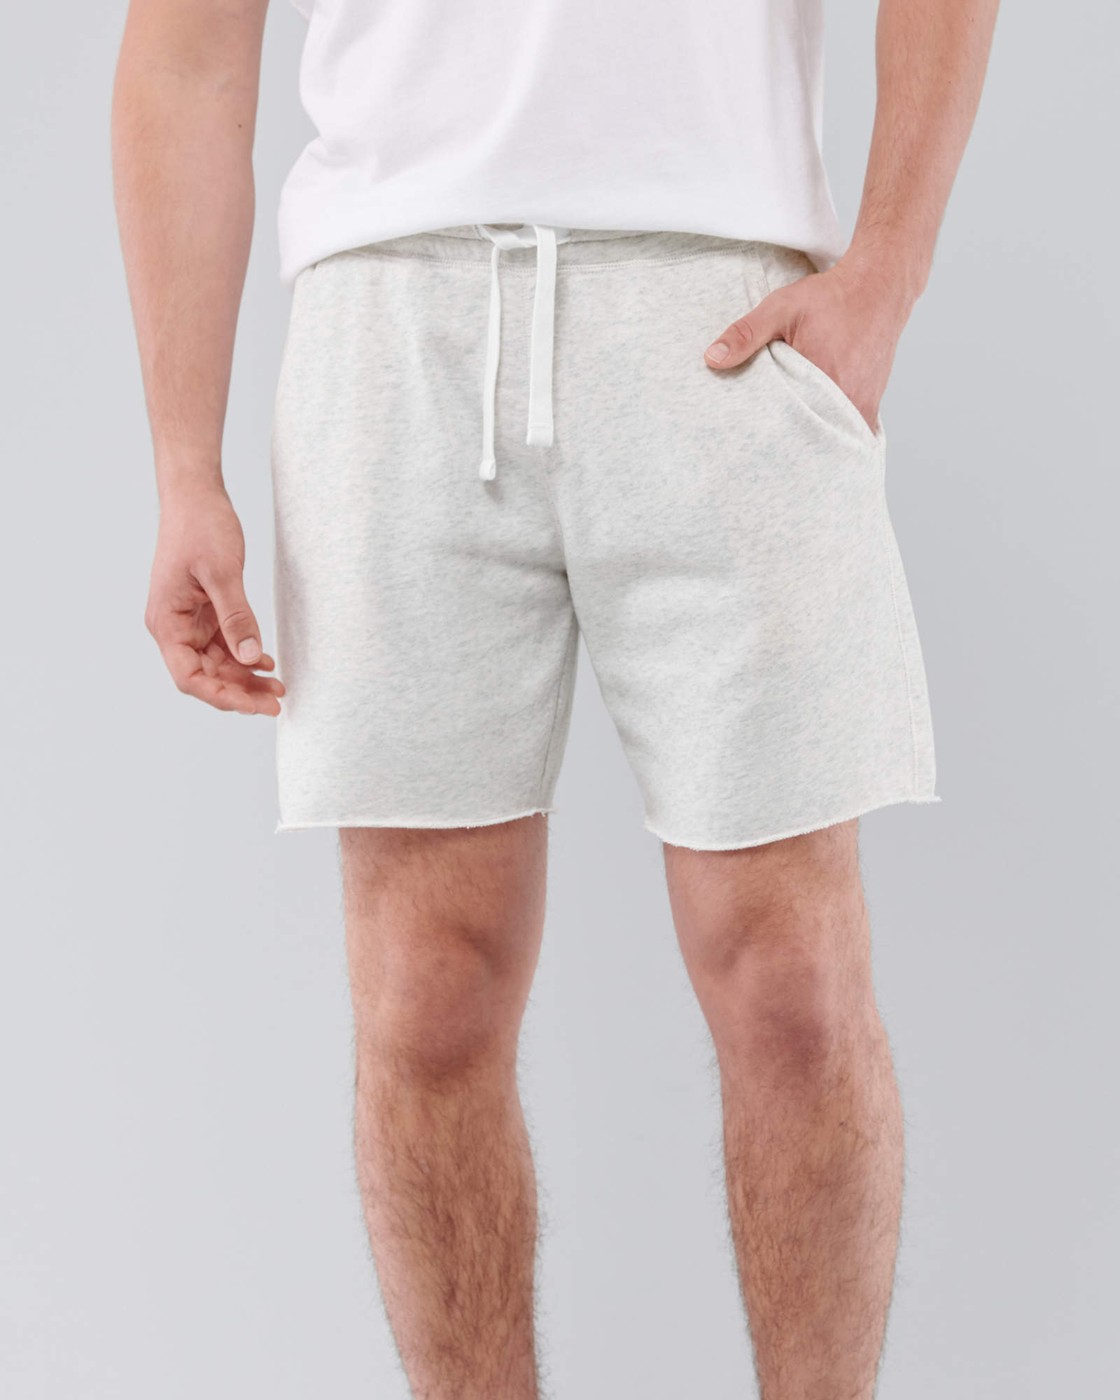 Шорты мужские - шорты Hollister, XL, XL